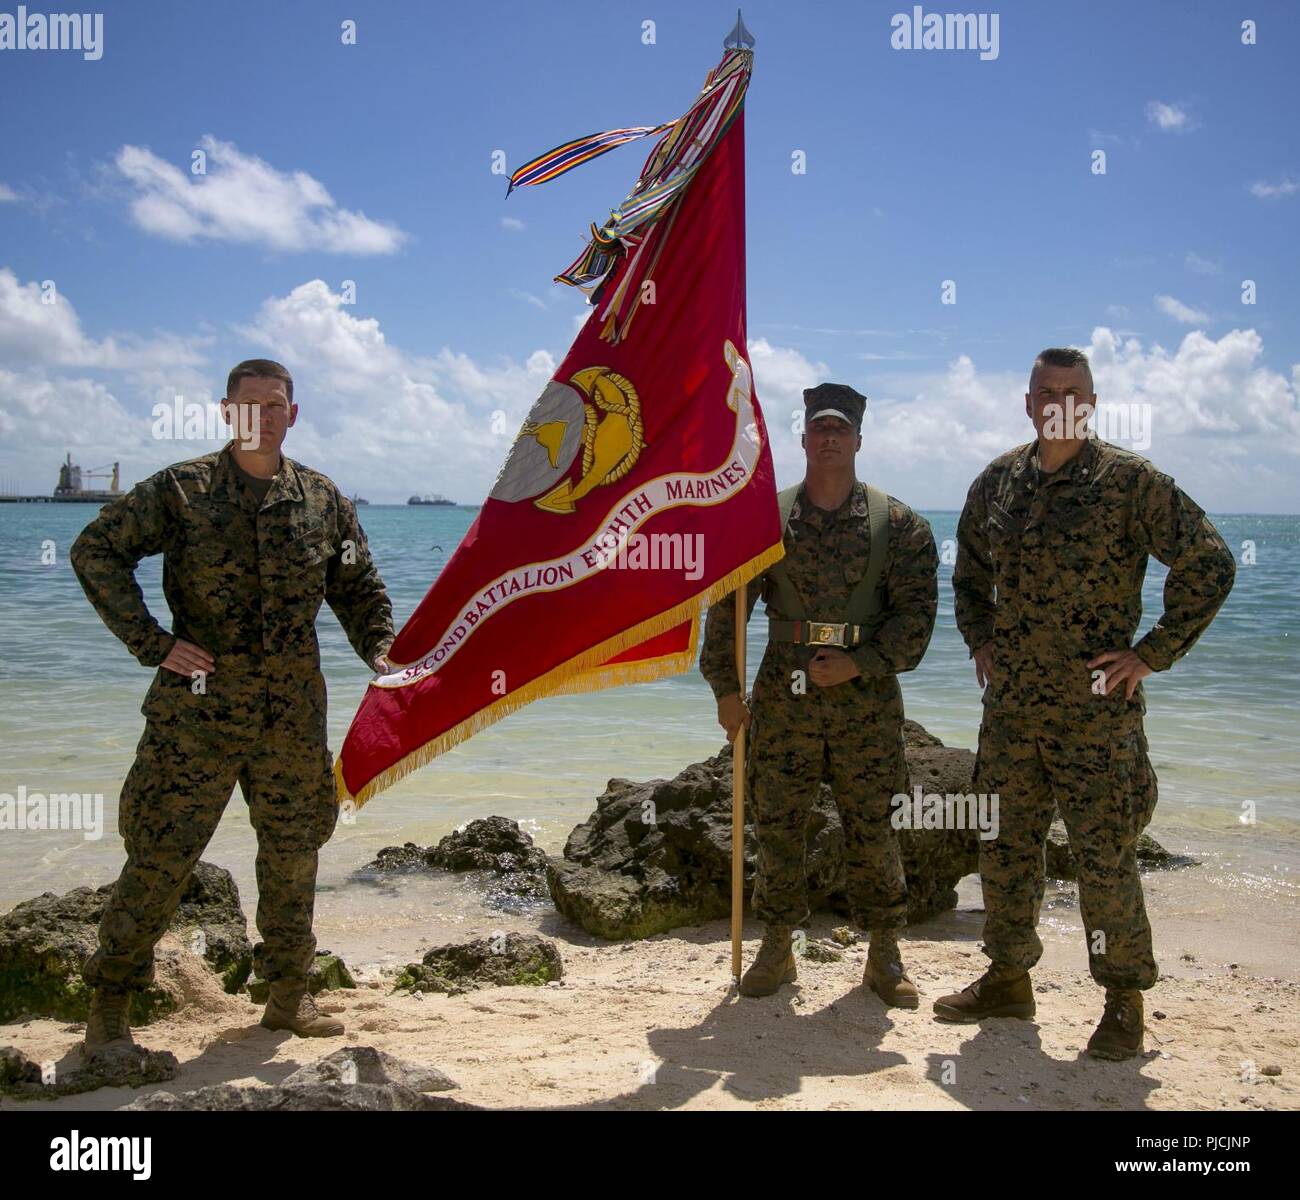 Lt. Col. Daniel Gaskell, Sgt. Il Mag. Daniel Headrick e Sgt. Aaron Mota, stand con i loro colori unità sulla spiaggia rossa 3 in Betio, Kiribati, luglio 22, 2018. In ricordo di uomini in 2° Battaglione, 8° Reggimento Marine che hanno combattuto durante la Battaglia di Tarawa, Marines e marinai restituiti i loro colori per onorare i loro predecessori. 2/8 è distribuito alla terza divisione Marine a Okinawa, in Giappone, come parte della distribuzione di unità di programma. Foto Stock